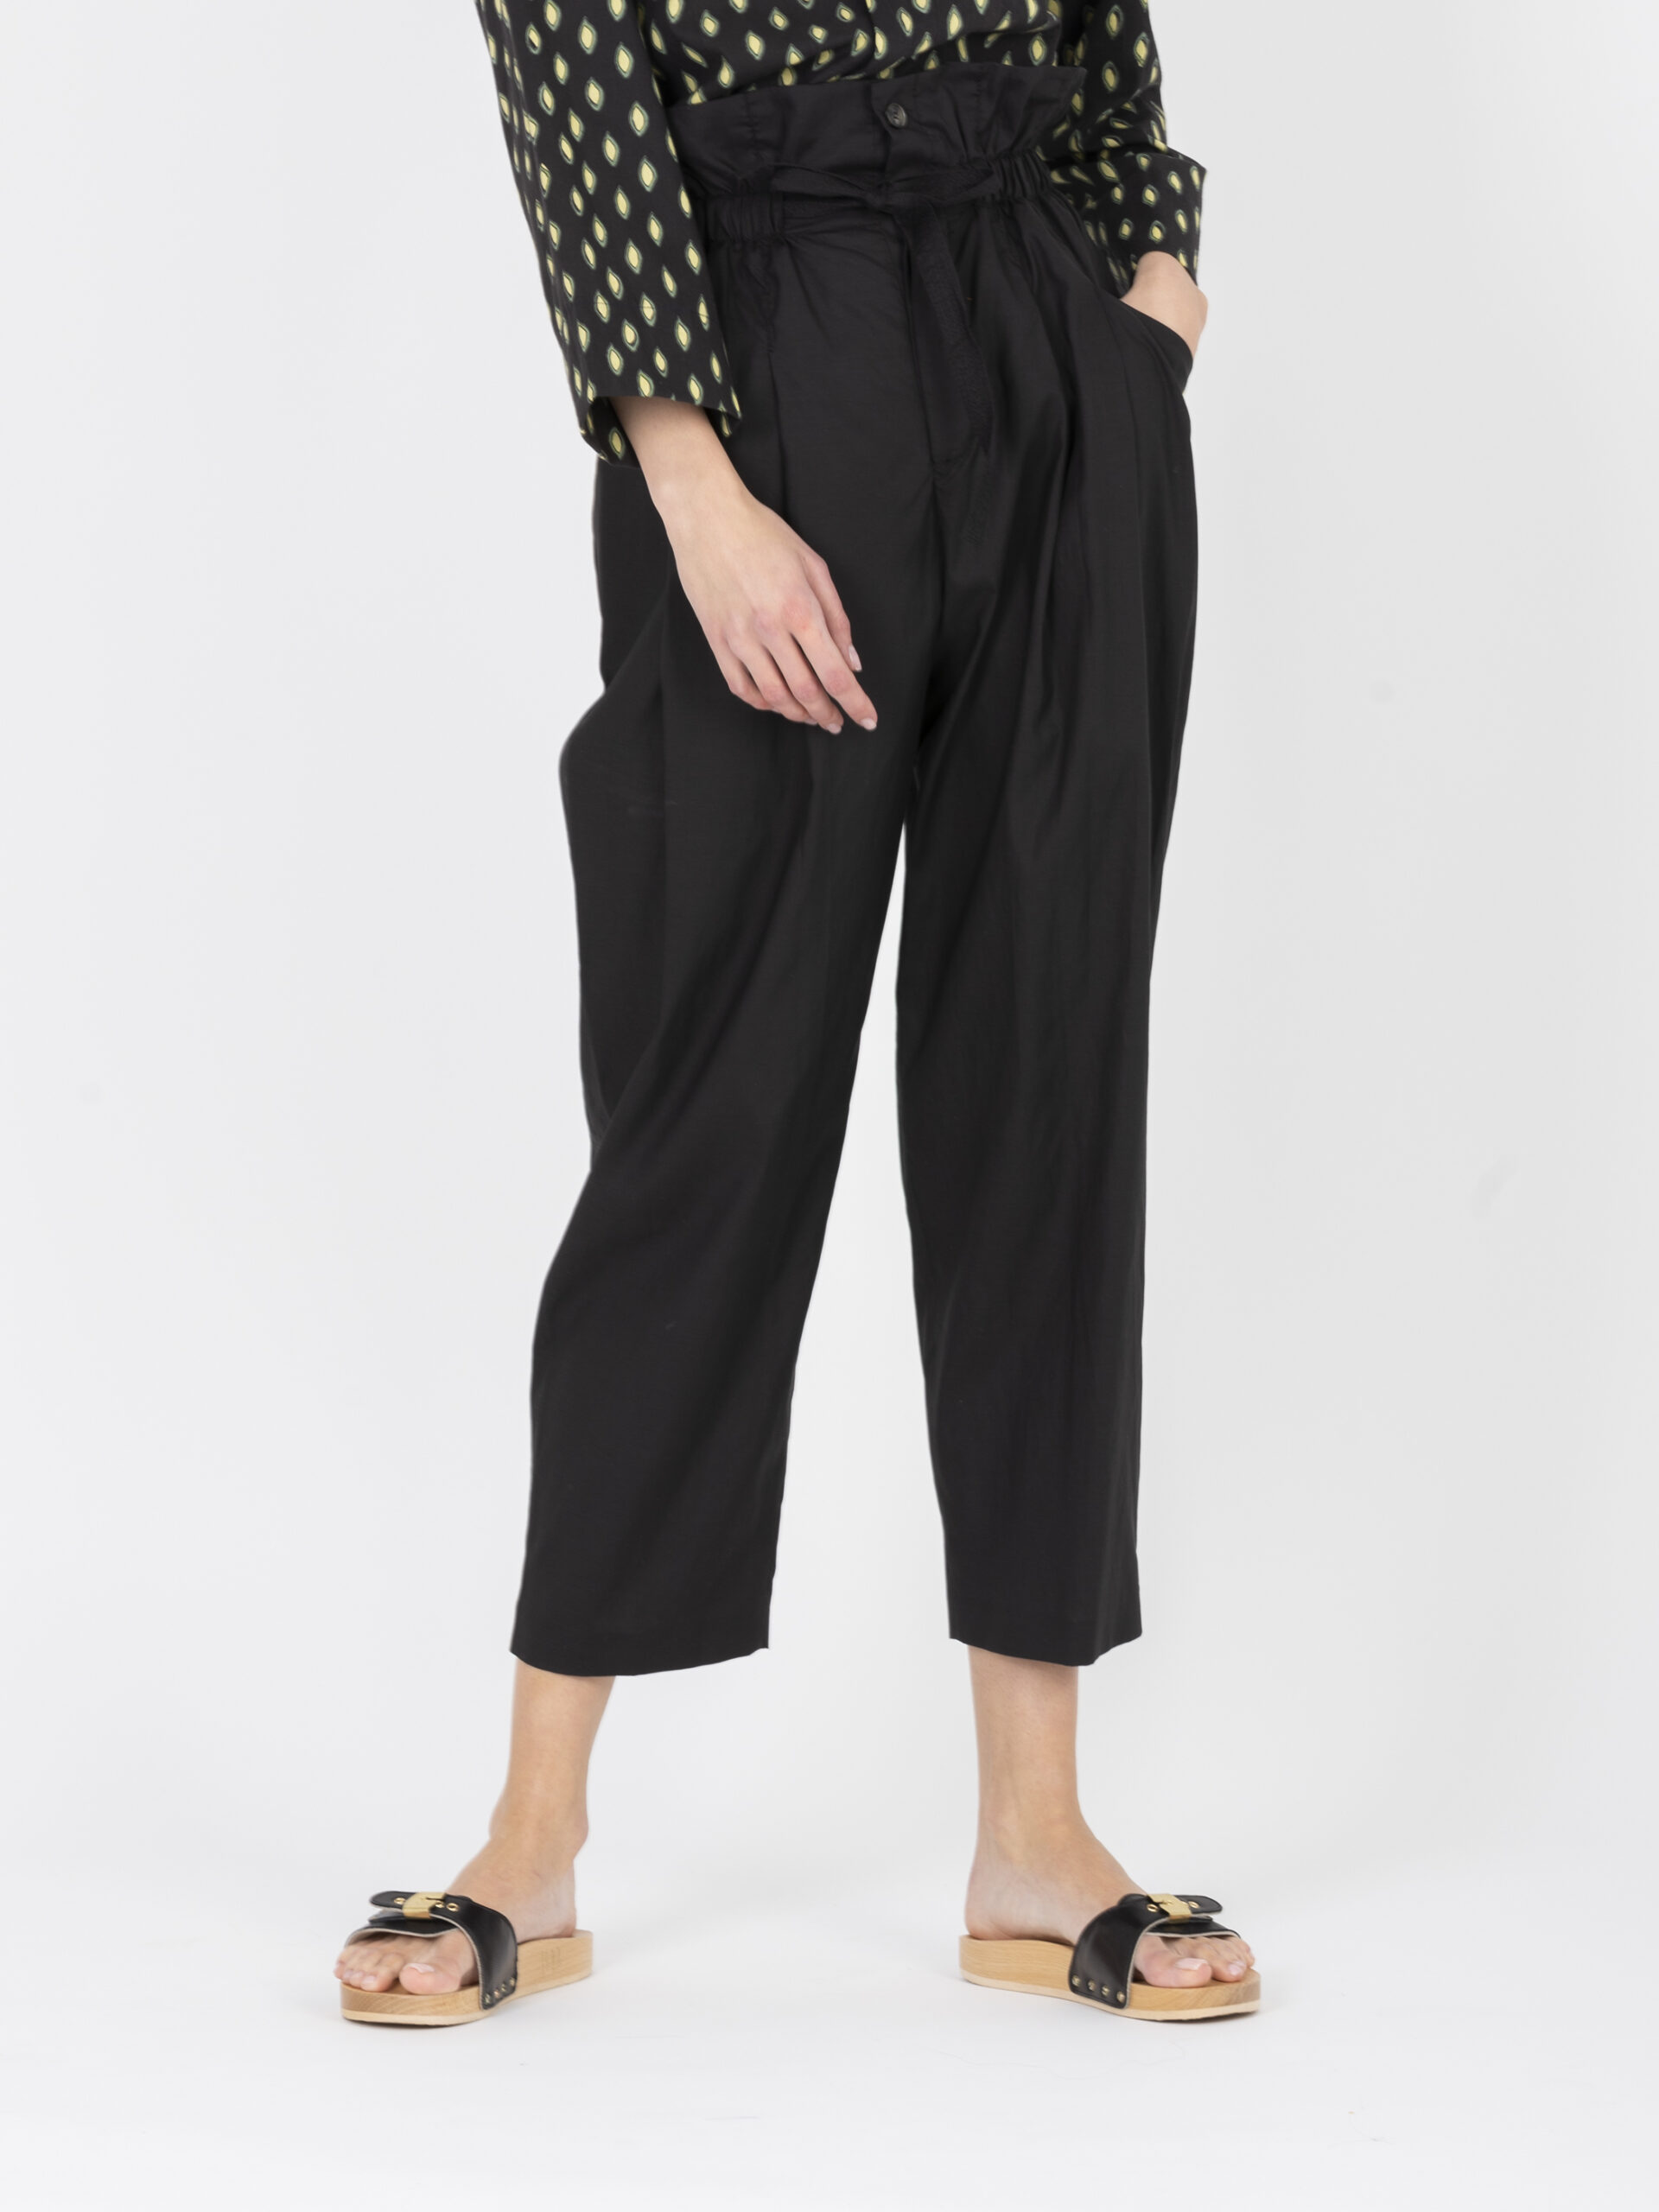 casimir-black-pants-lightweight-poplin-cotton-high-waist-diagonal-pockets-vanessa-bruno-matchboxathens